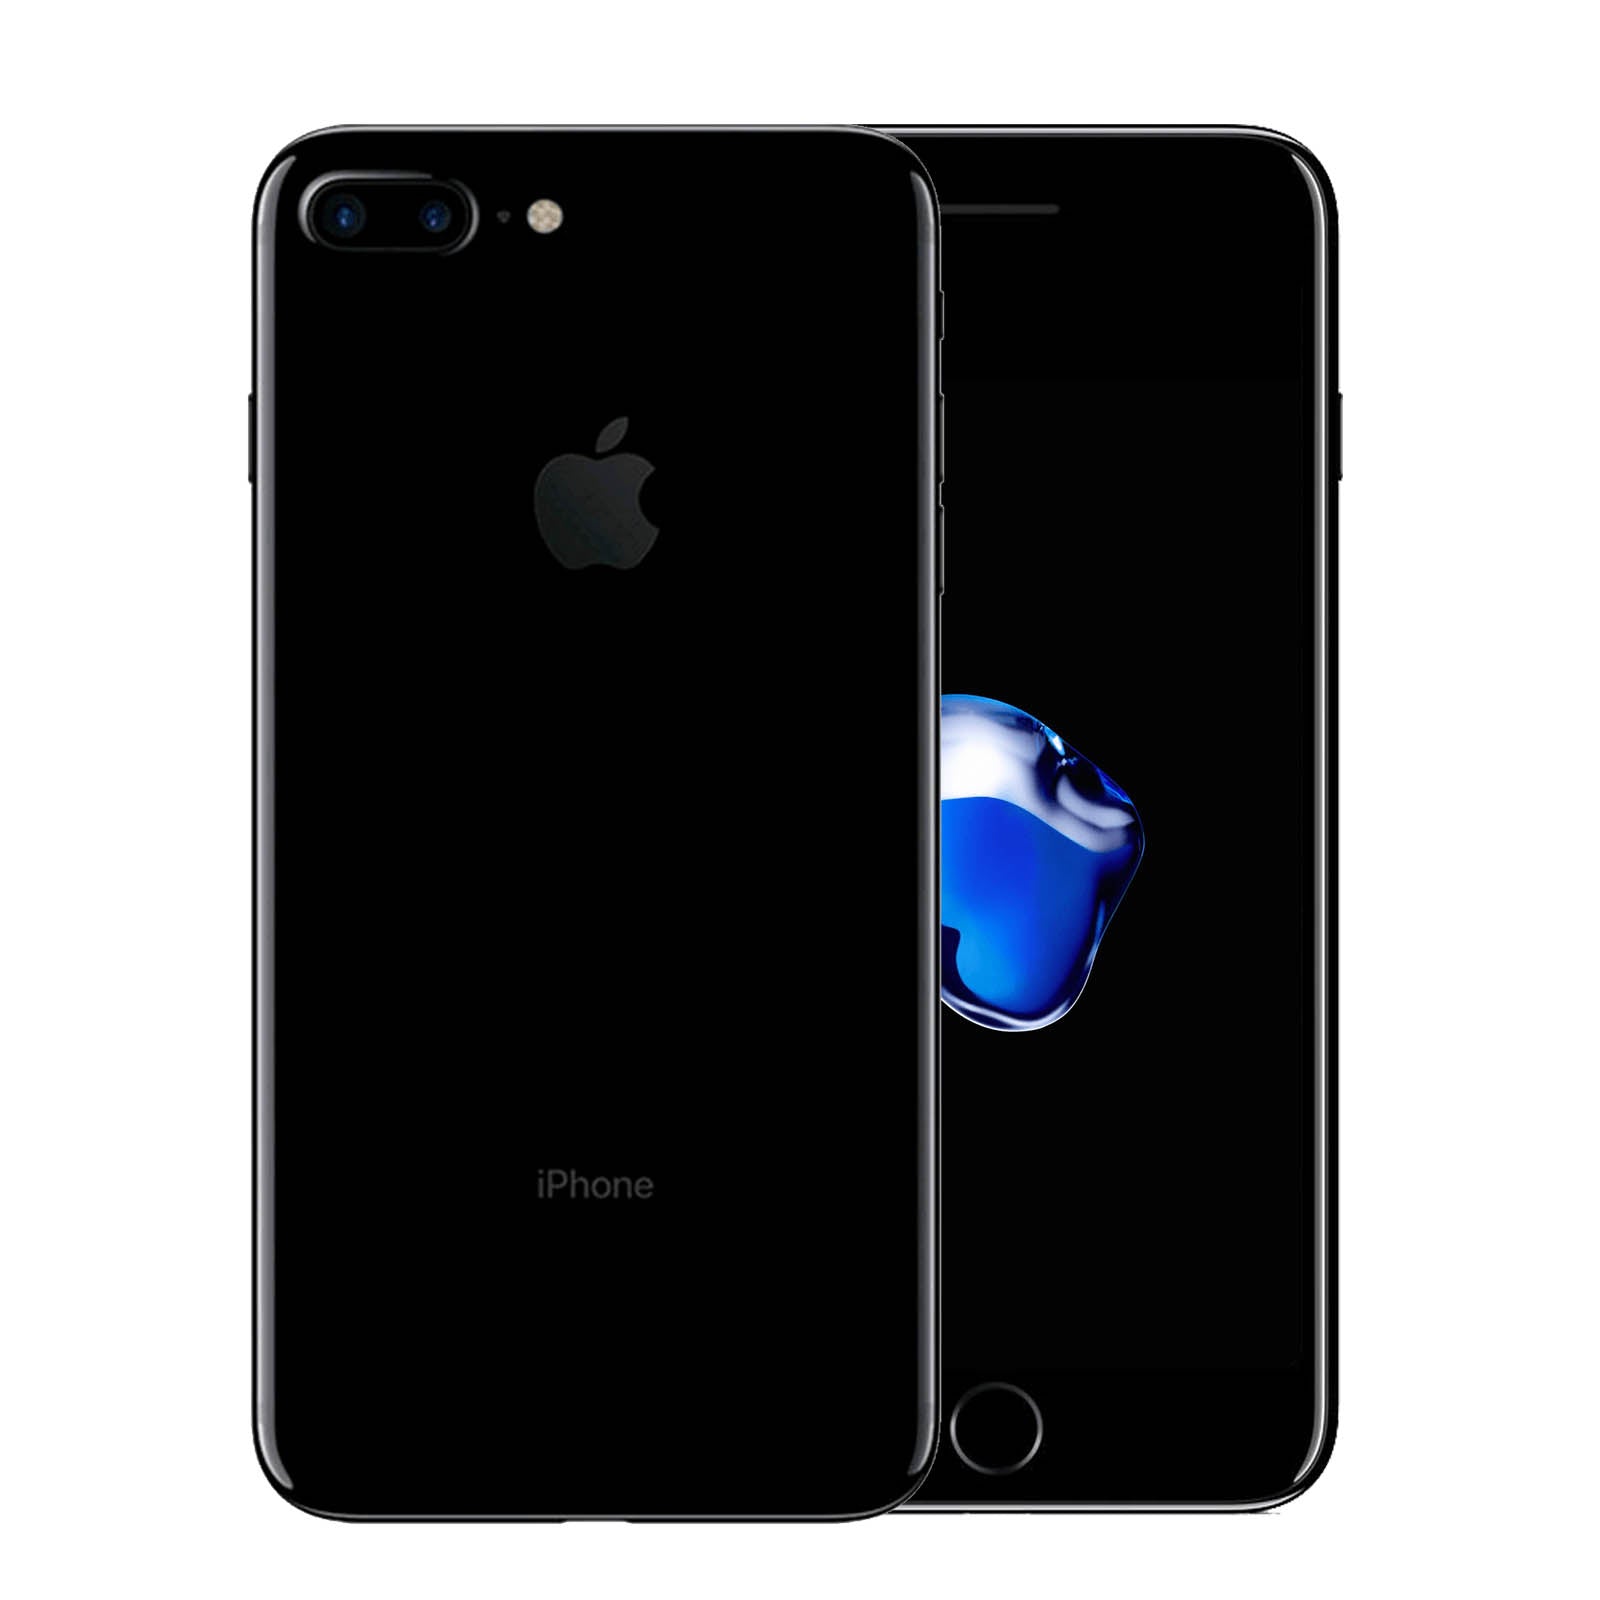 Apple iPhone 7 Plus 256GB Jet Black Fair - Unlocked